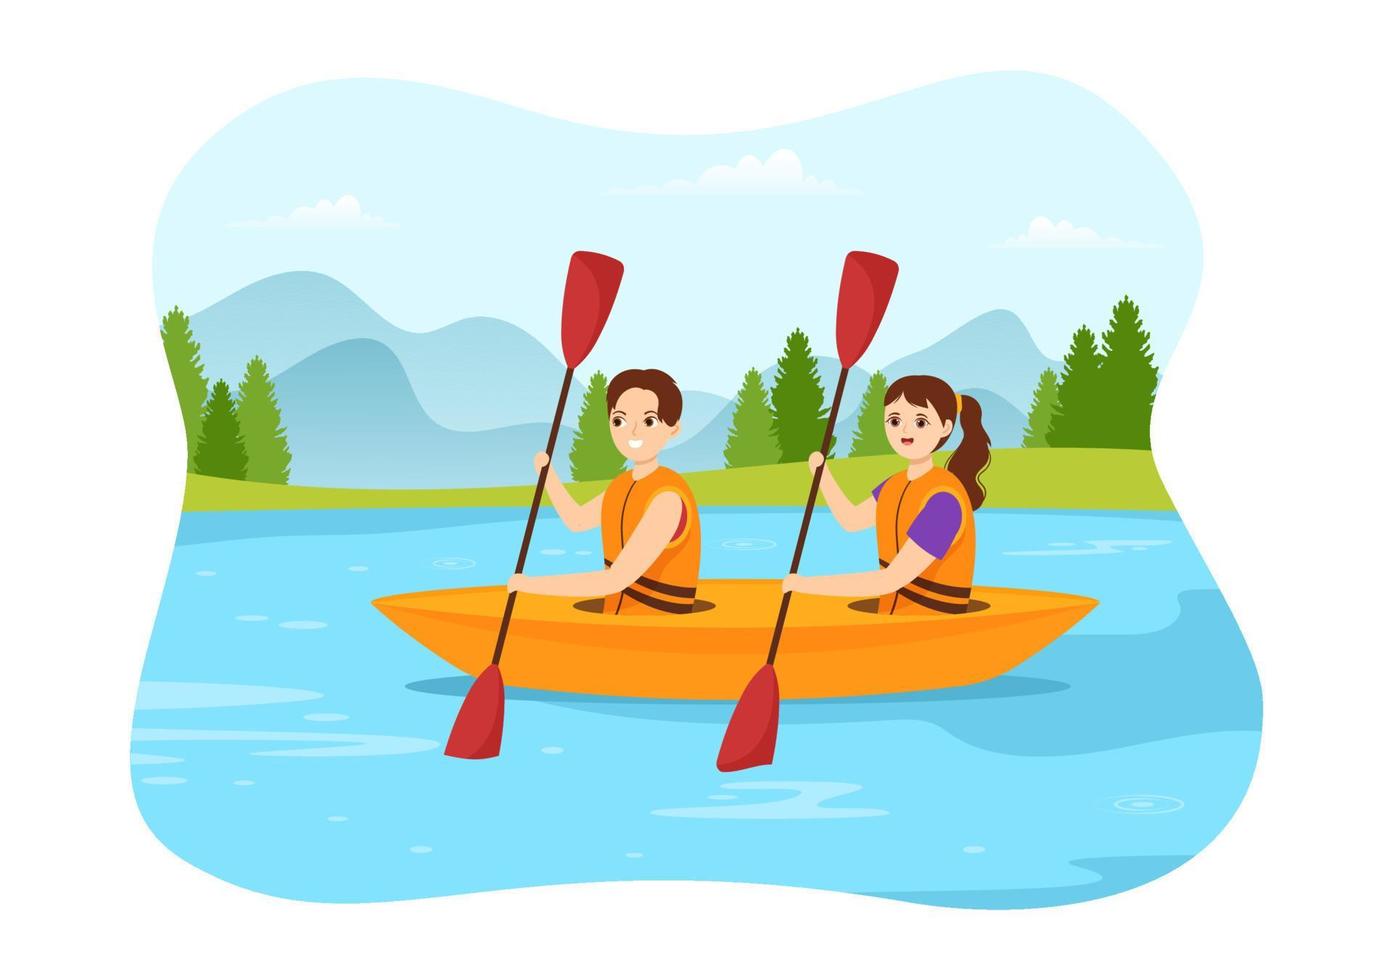 pessoas desfrutando de ilustração de remo com canoa e navegando no rio ou lago em esportes aquáticos ativos modelo desenhado à mão vetor